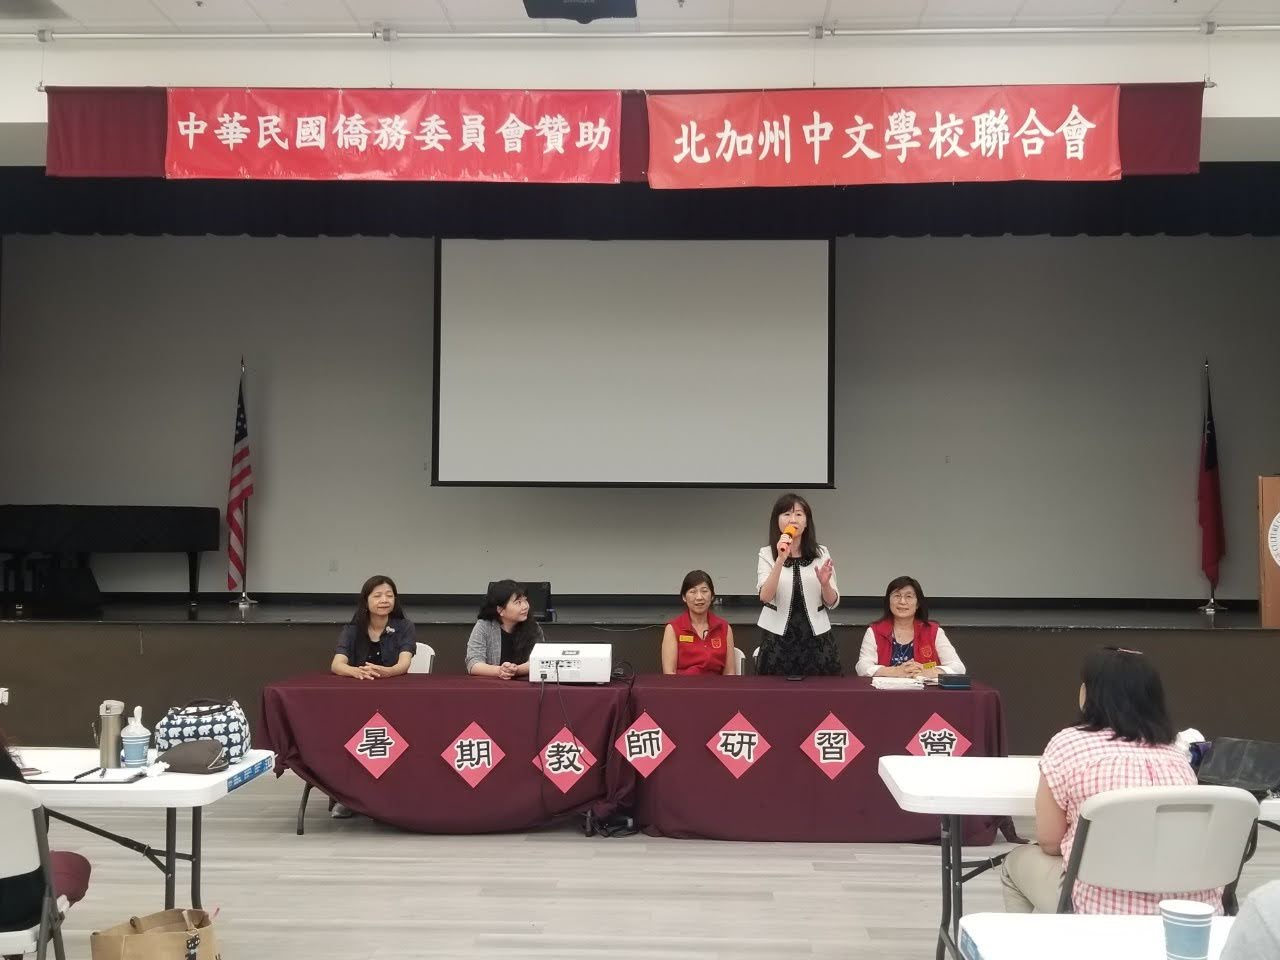 「金山灣區華僑文教服務中心」莊雅淑主任蒞臨暑期教師營的 Q&A 座談會